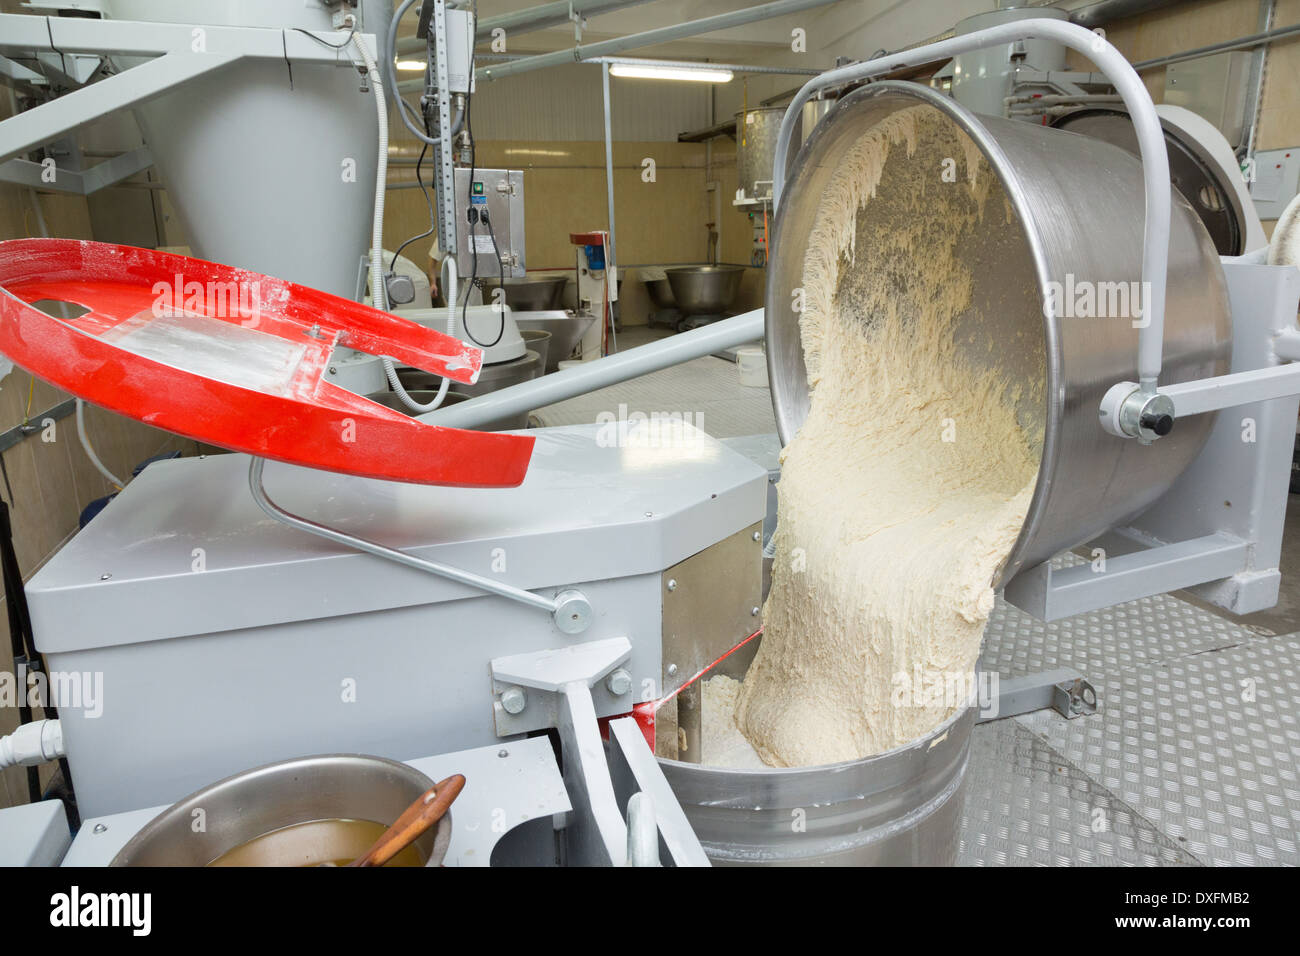 Teig kneten auf einer Brotfabrik Bäckerei Produktion Stockfoto